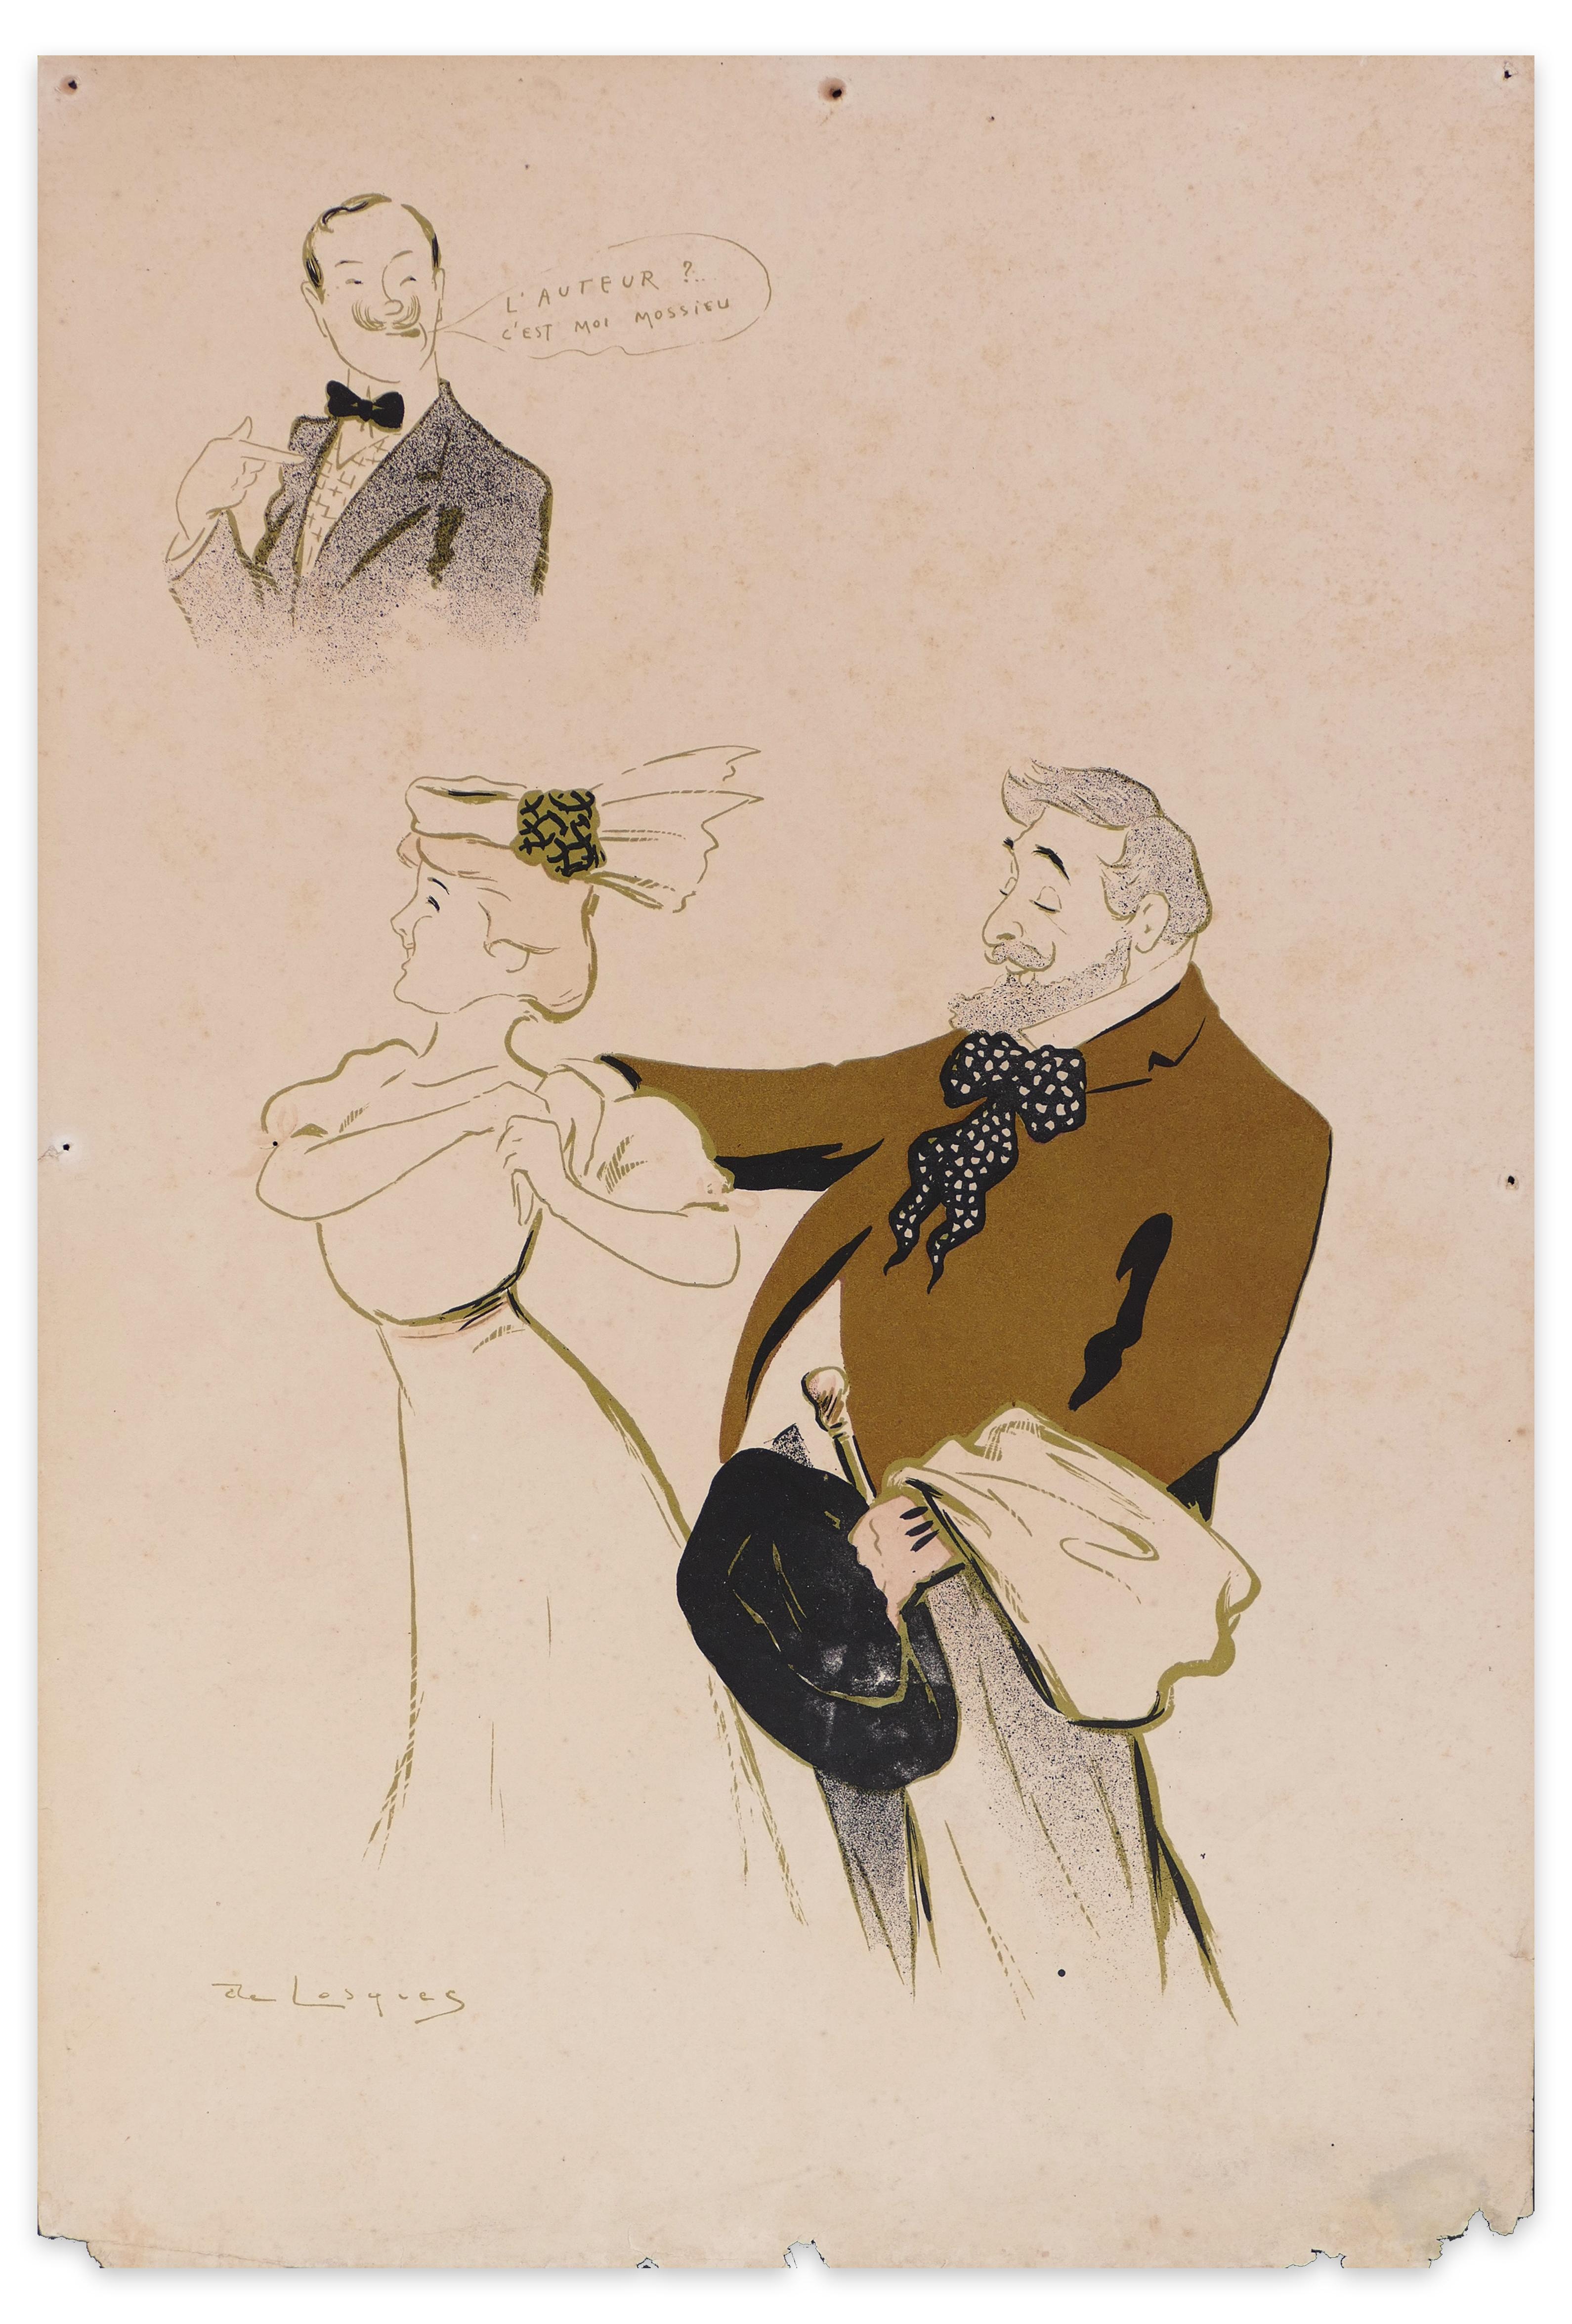 Henri Daniel Thouroude Figurative Print - L'Auteur c'est moi - Lithograph by Daniel de Losques - Early 20th Century